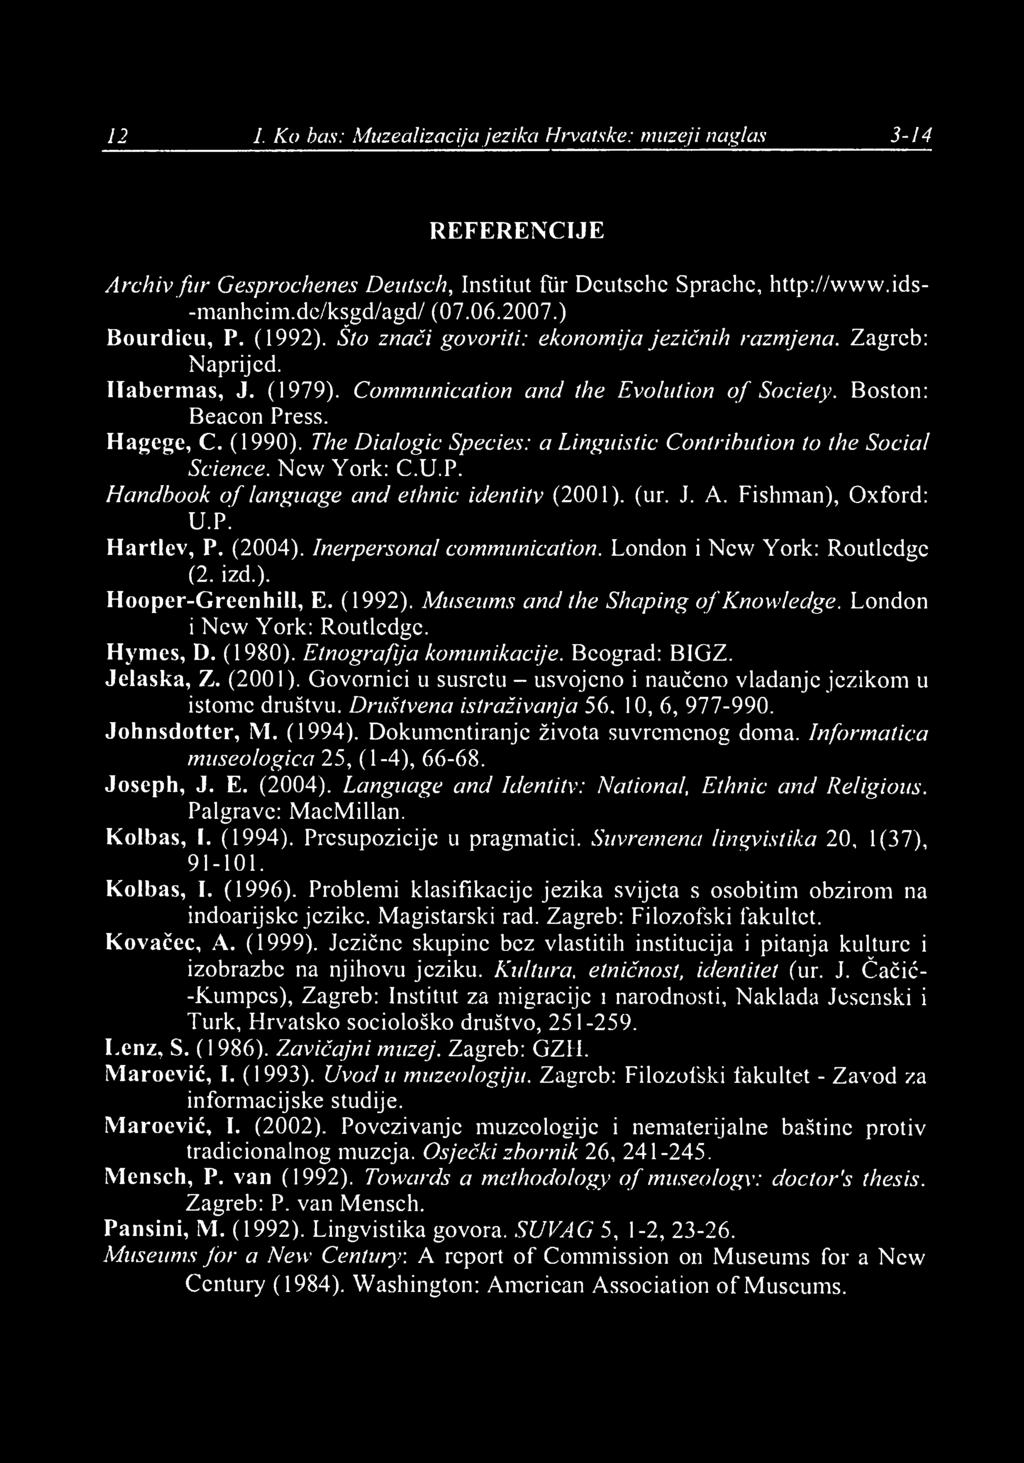 12 I. Ko/bas: Muzealizacija jezika Hrvatske: muzeji naglas 3-14 REFERENCIJE Archiv fur Gesprochenes Deutsch, Institut flir Dcutschc Sprachc, http://www.ids- ' -manheim.de/ksgd/agd/ (07.06.2007.